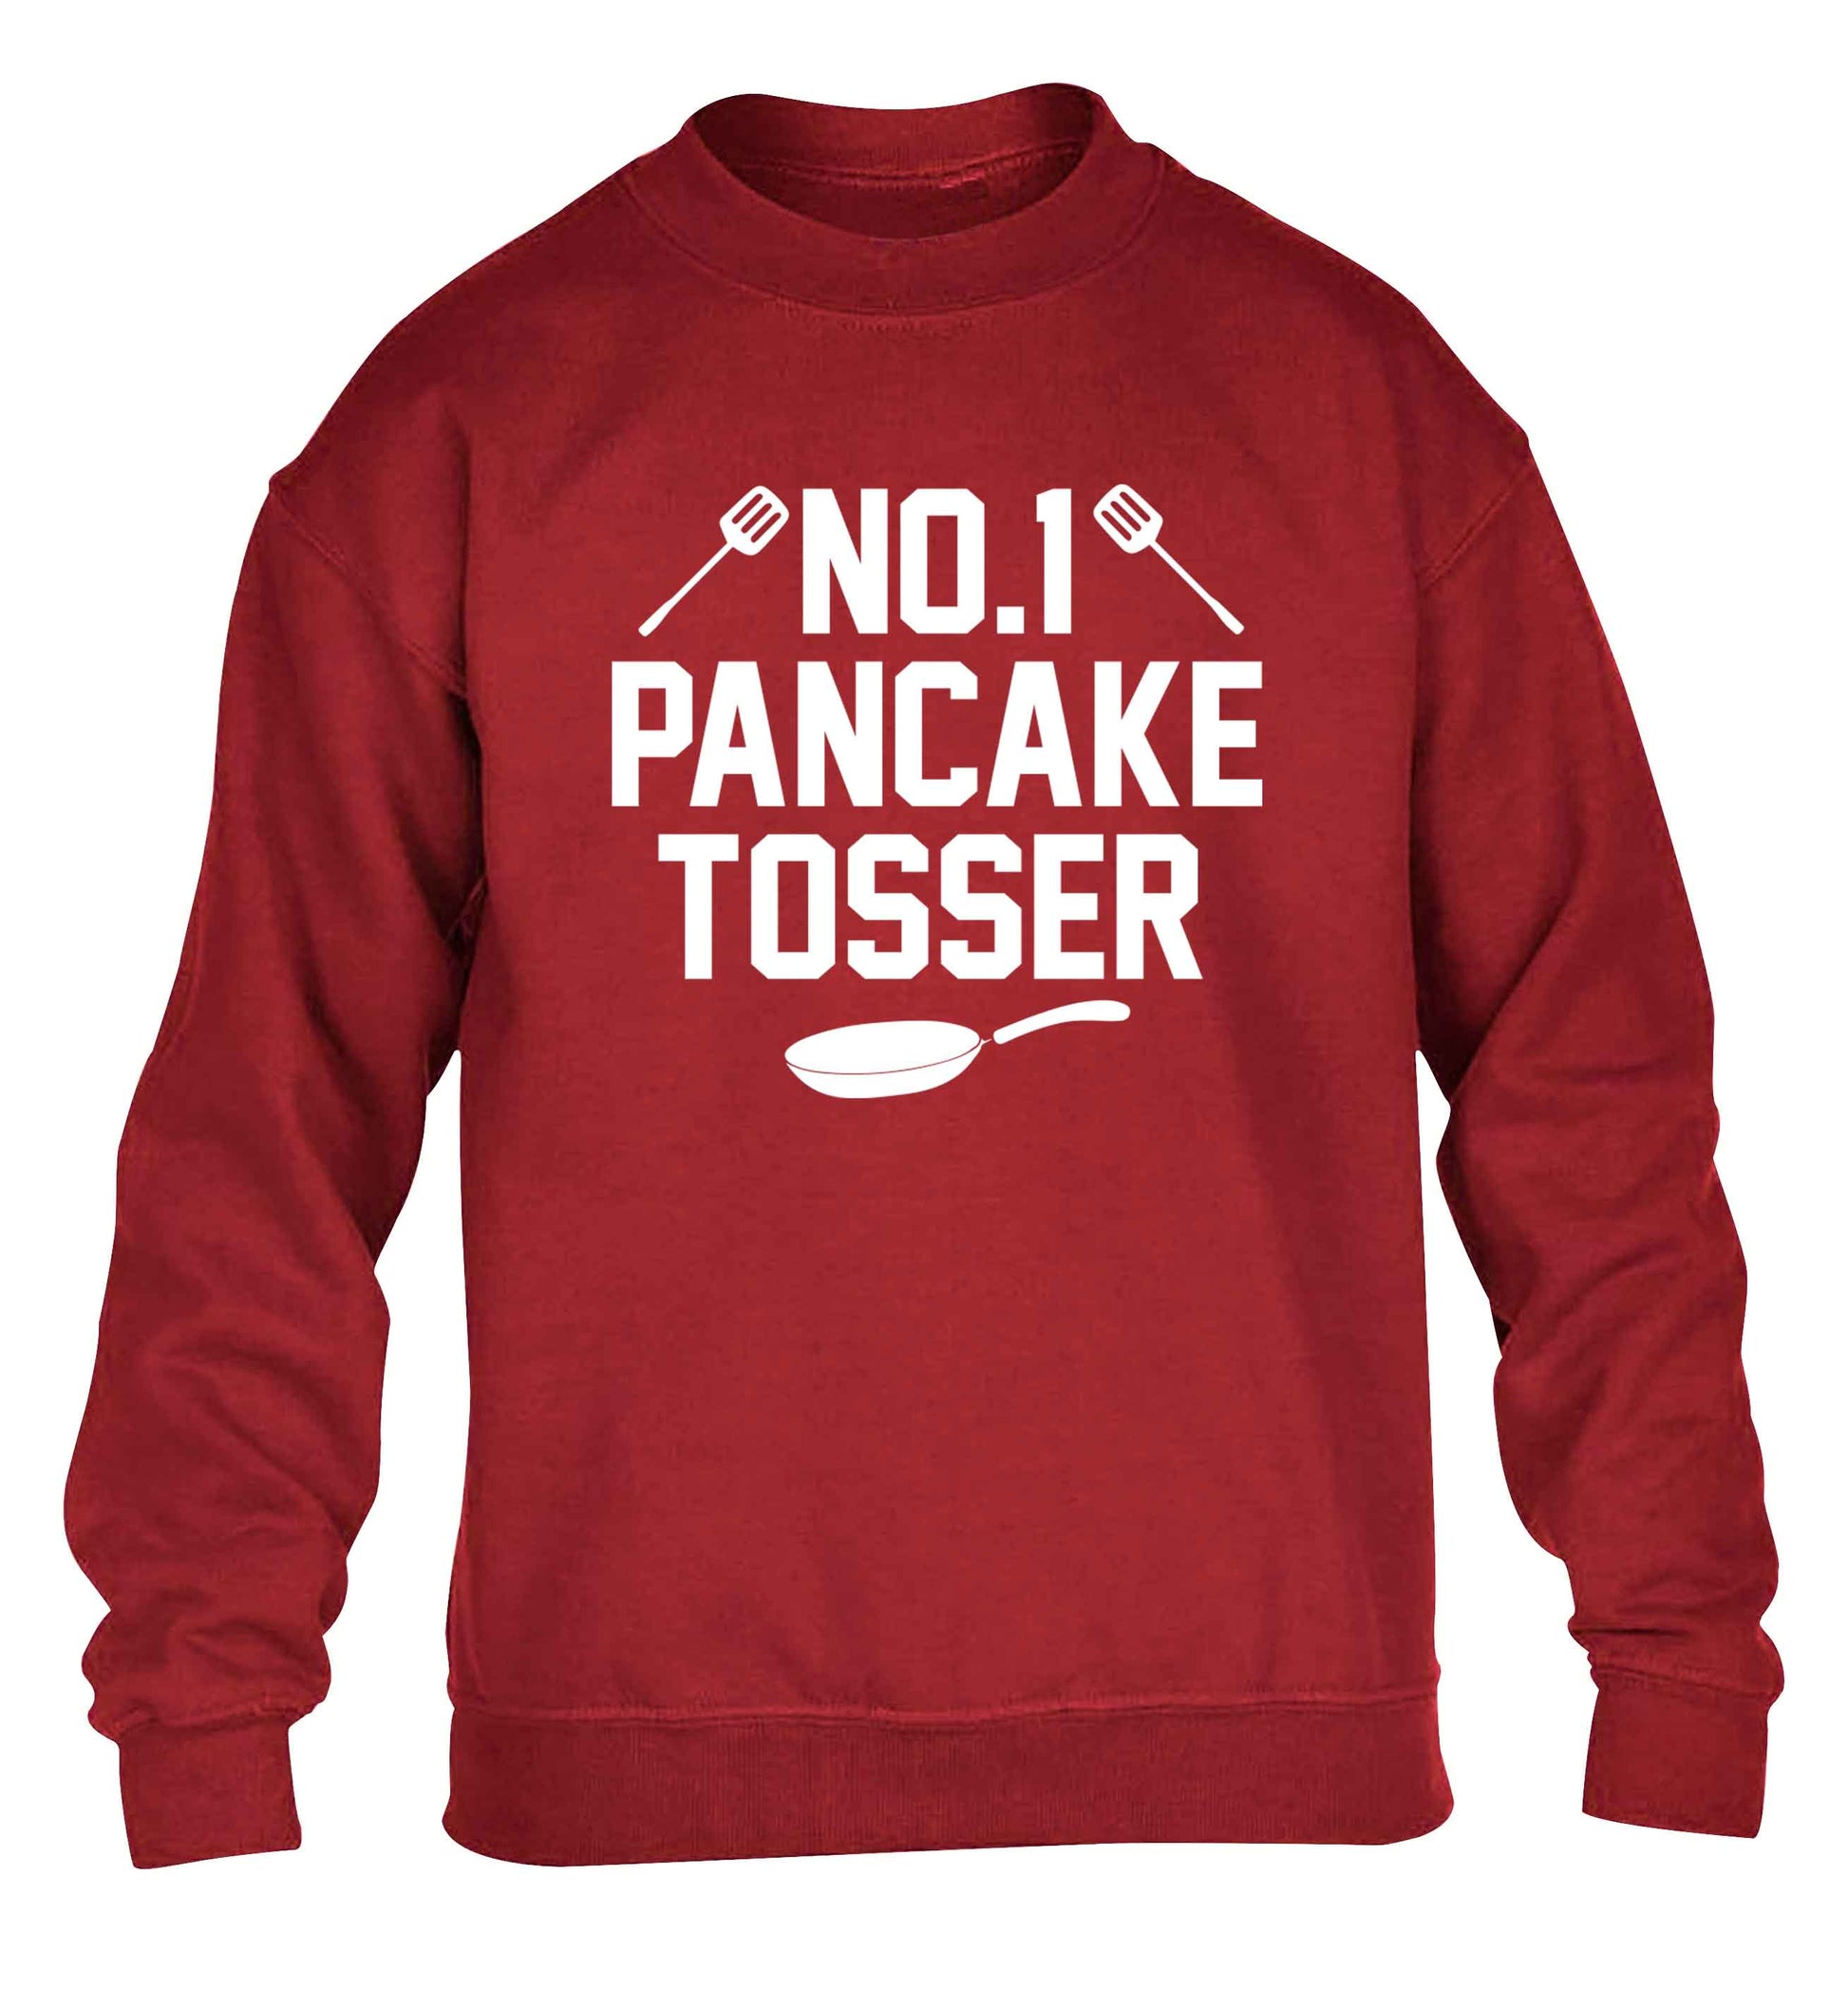 No.1 Pancake tosser children's grey sweater 12-13 Years